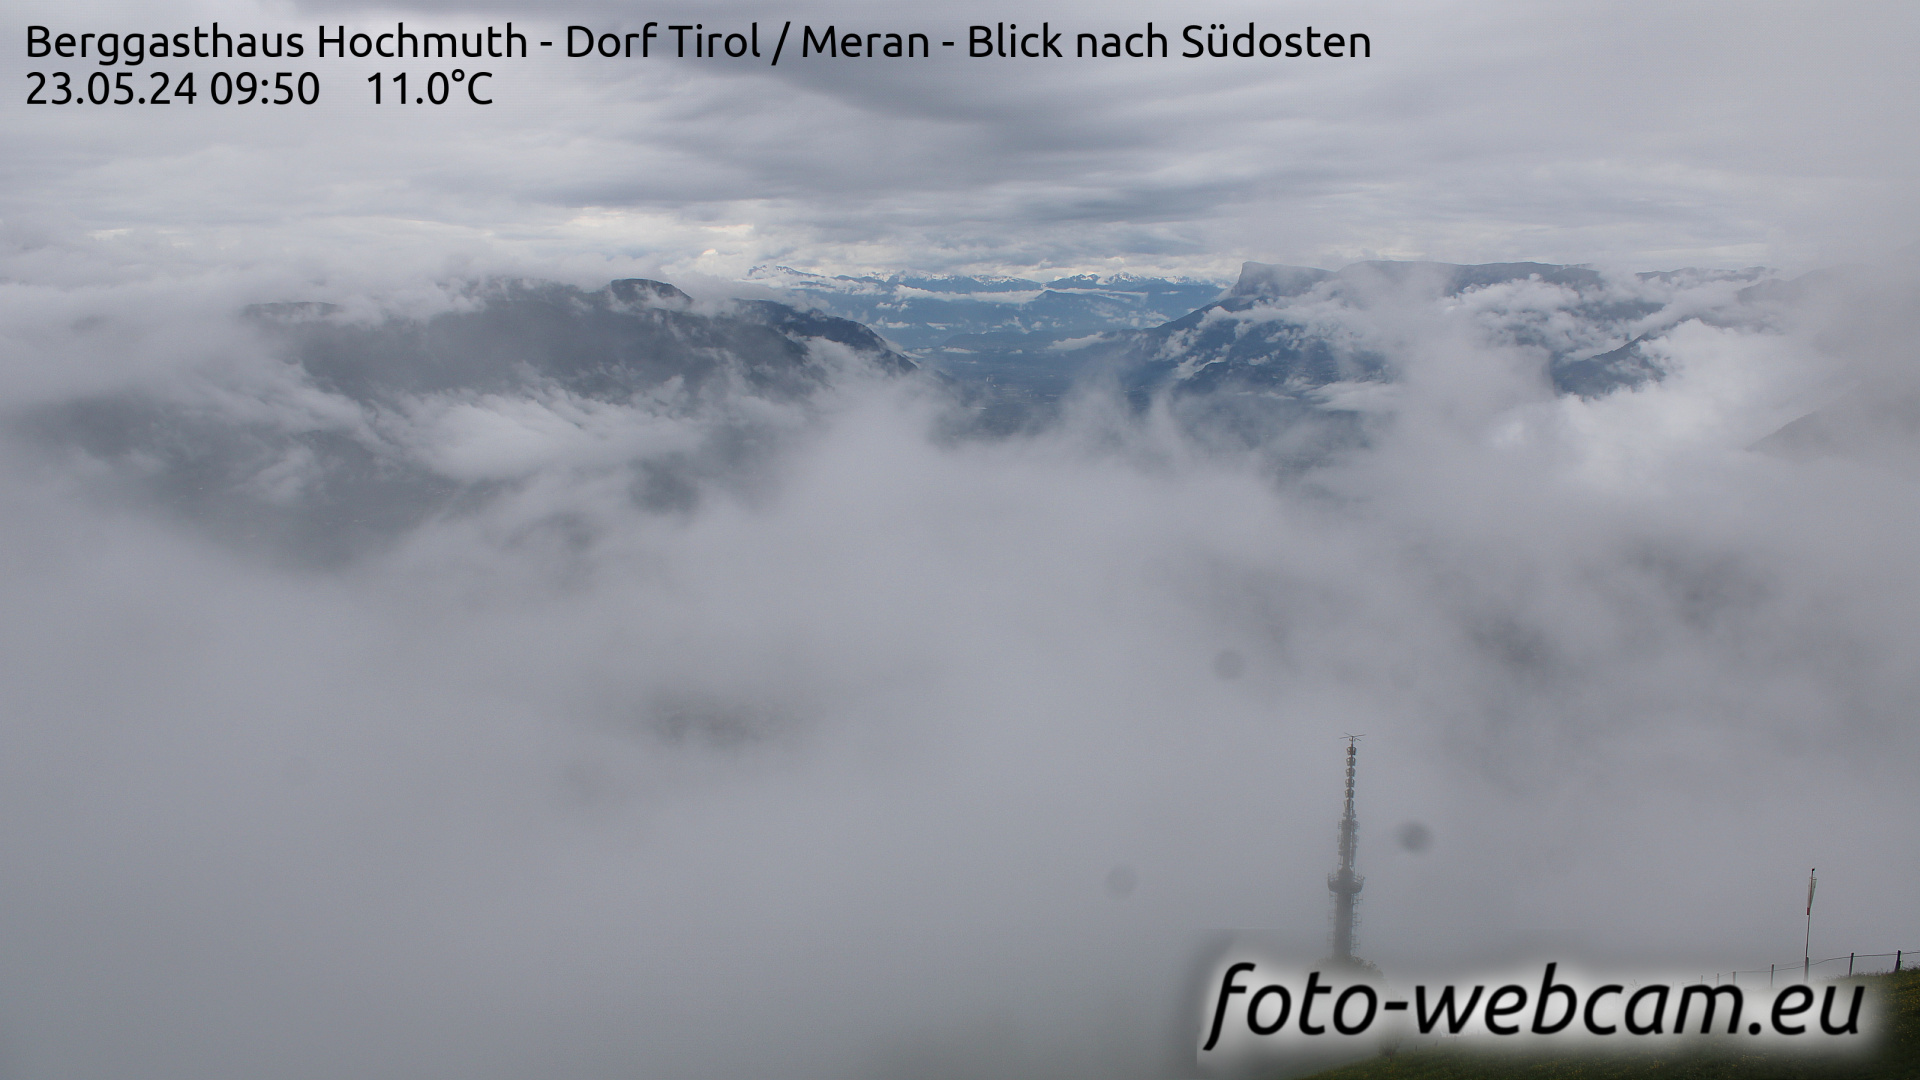 Dorf Tirol Tir. 09:56